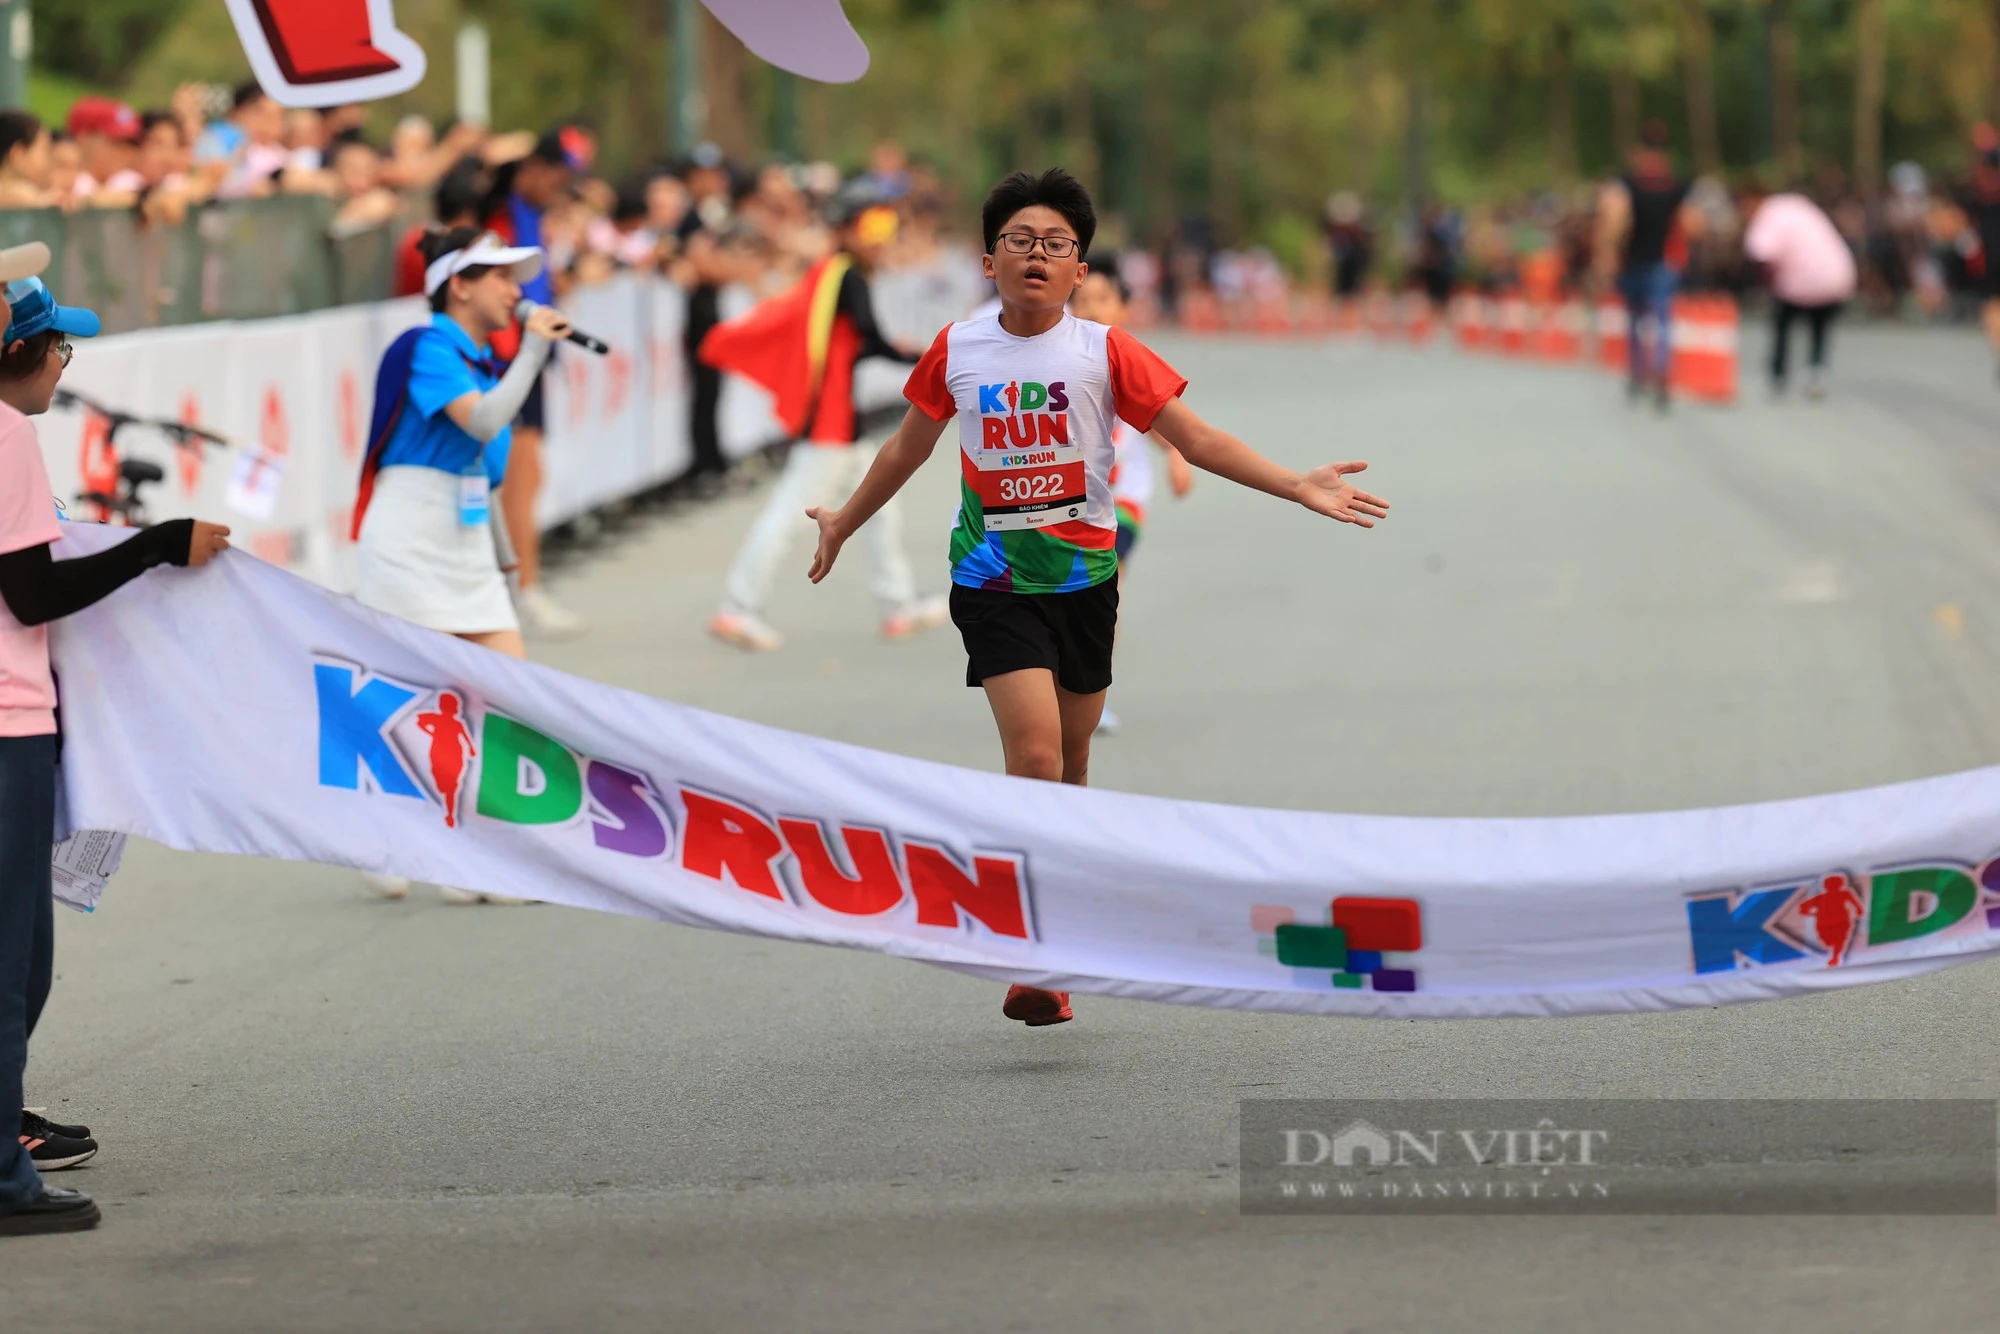 Hơn 1.000 vận động viên nhí tham gia giải chạy Kids Run - Ảnh 3.